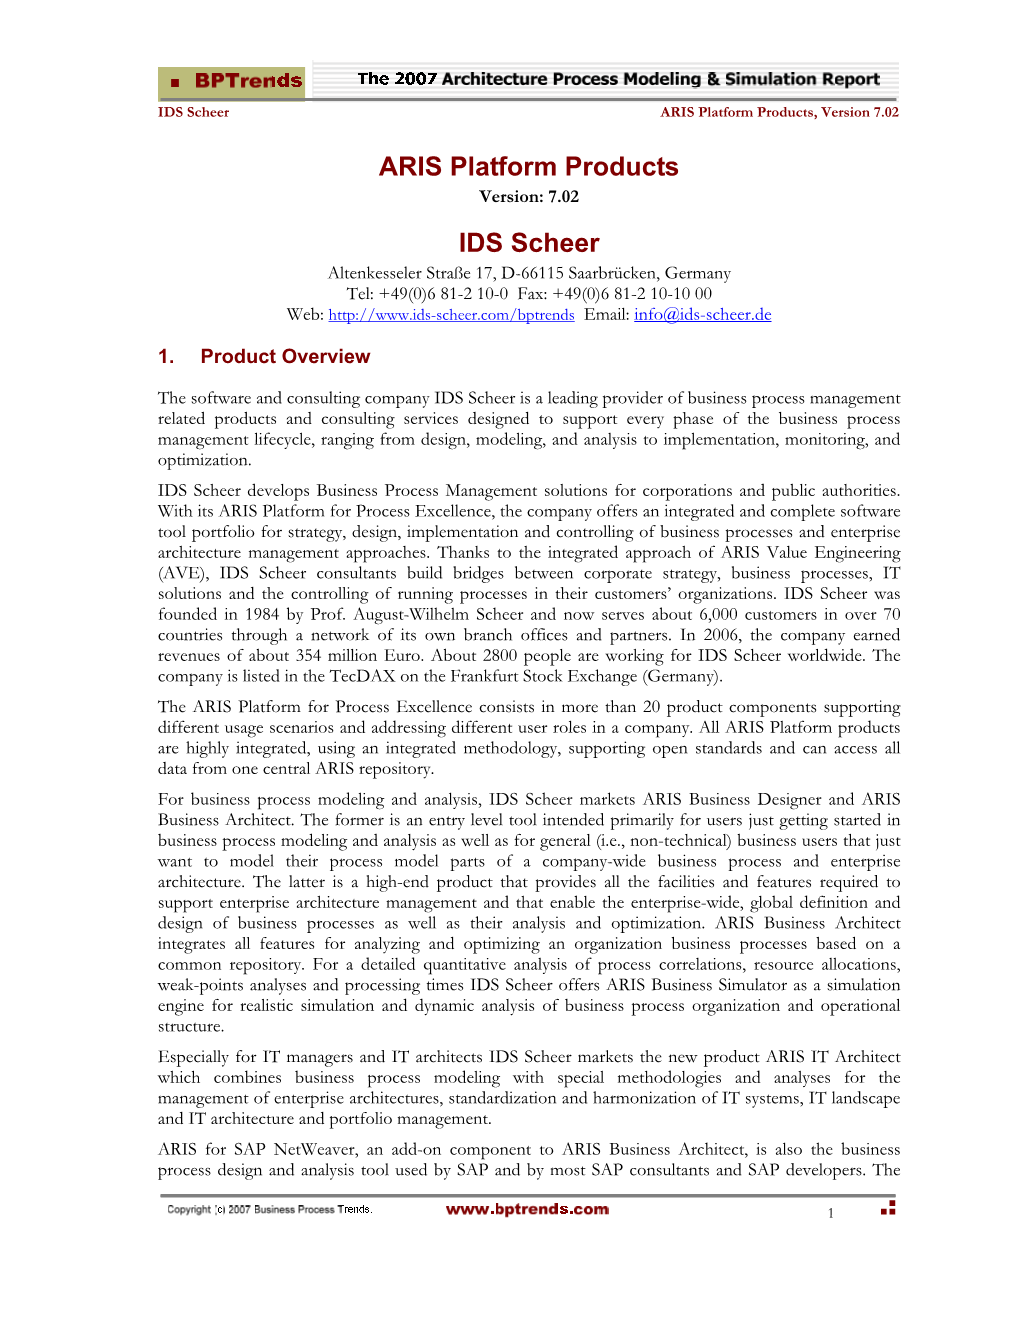 IDS Scheer ARIS Platform Products, Version 7.02